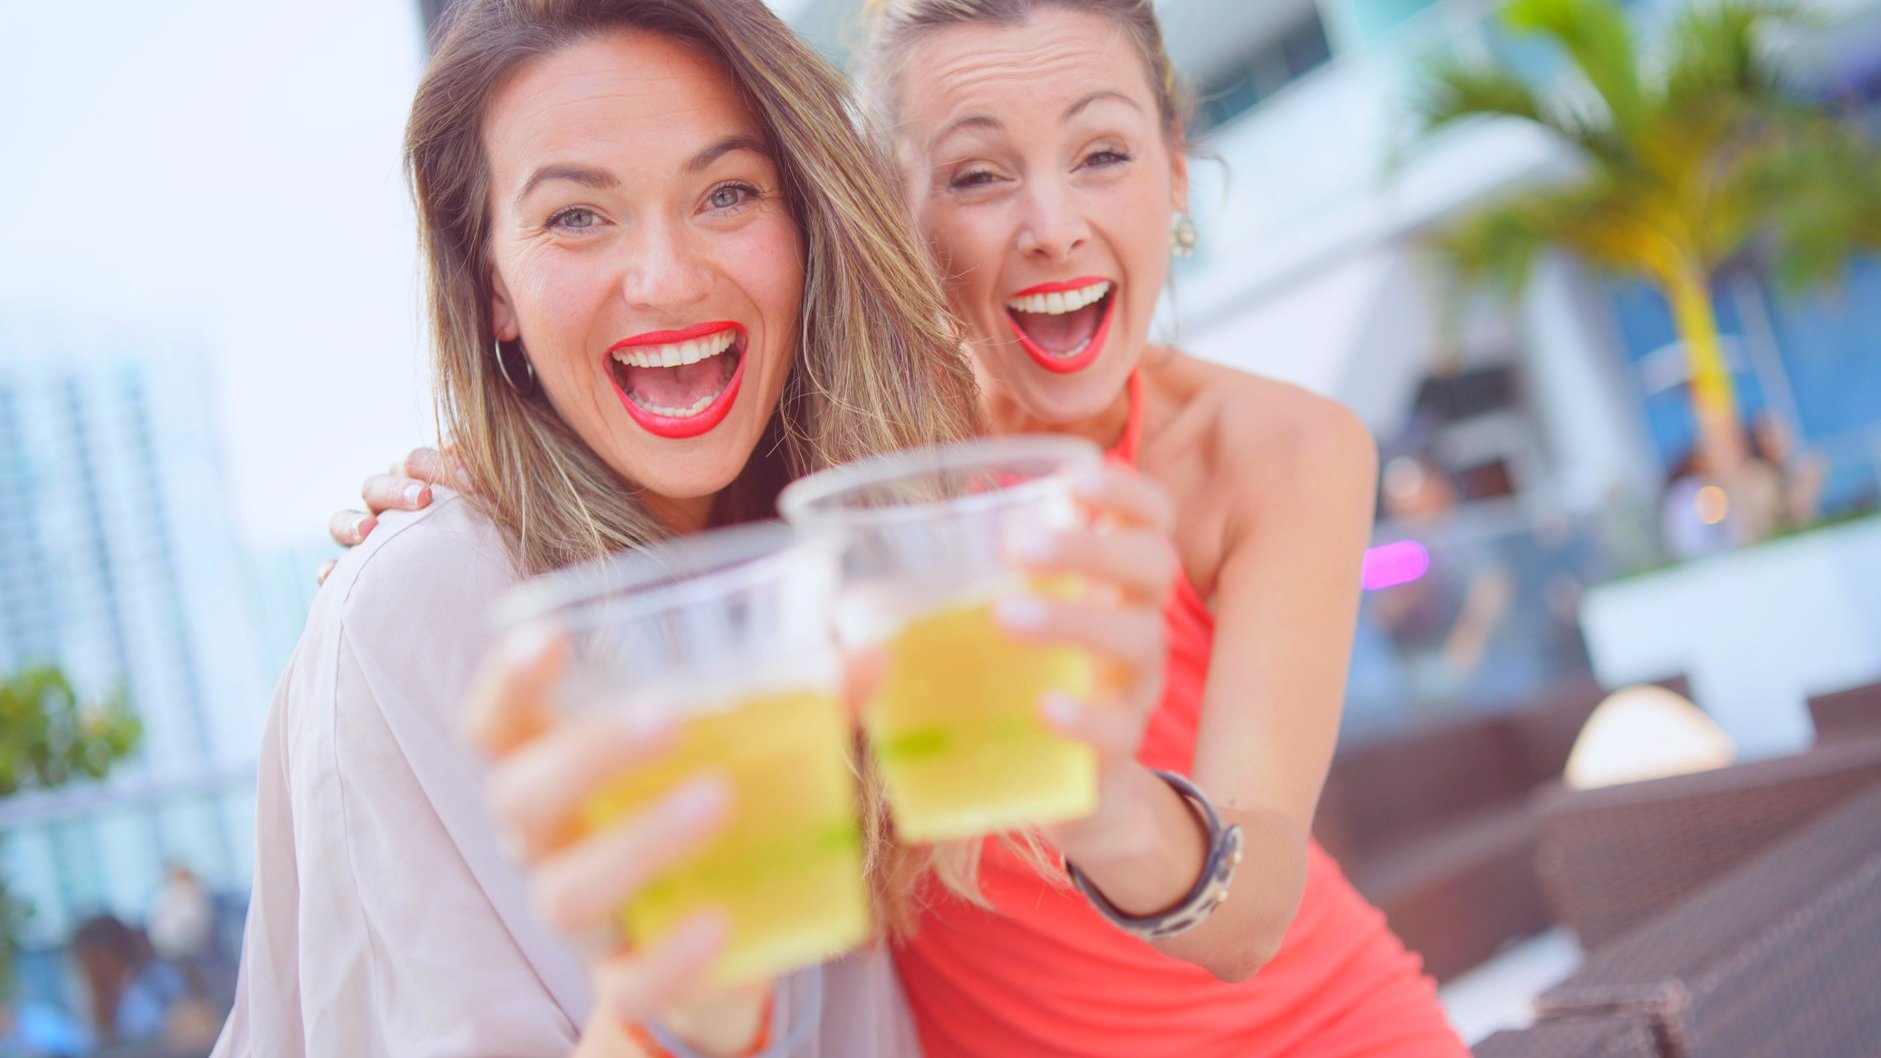 Duas mulheres brancas brindando copos, com expressões sorridentes.